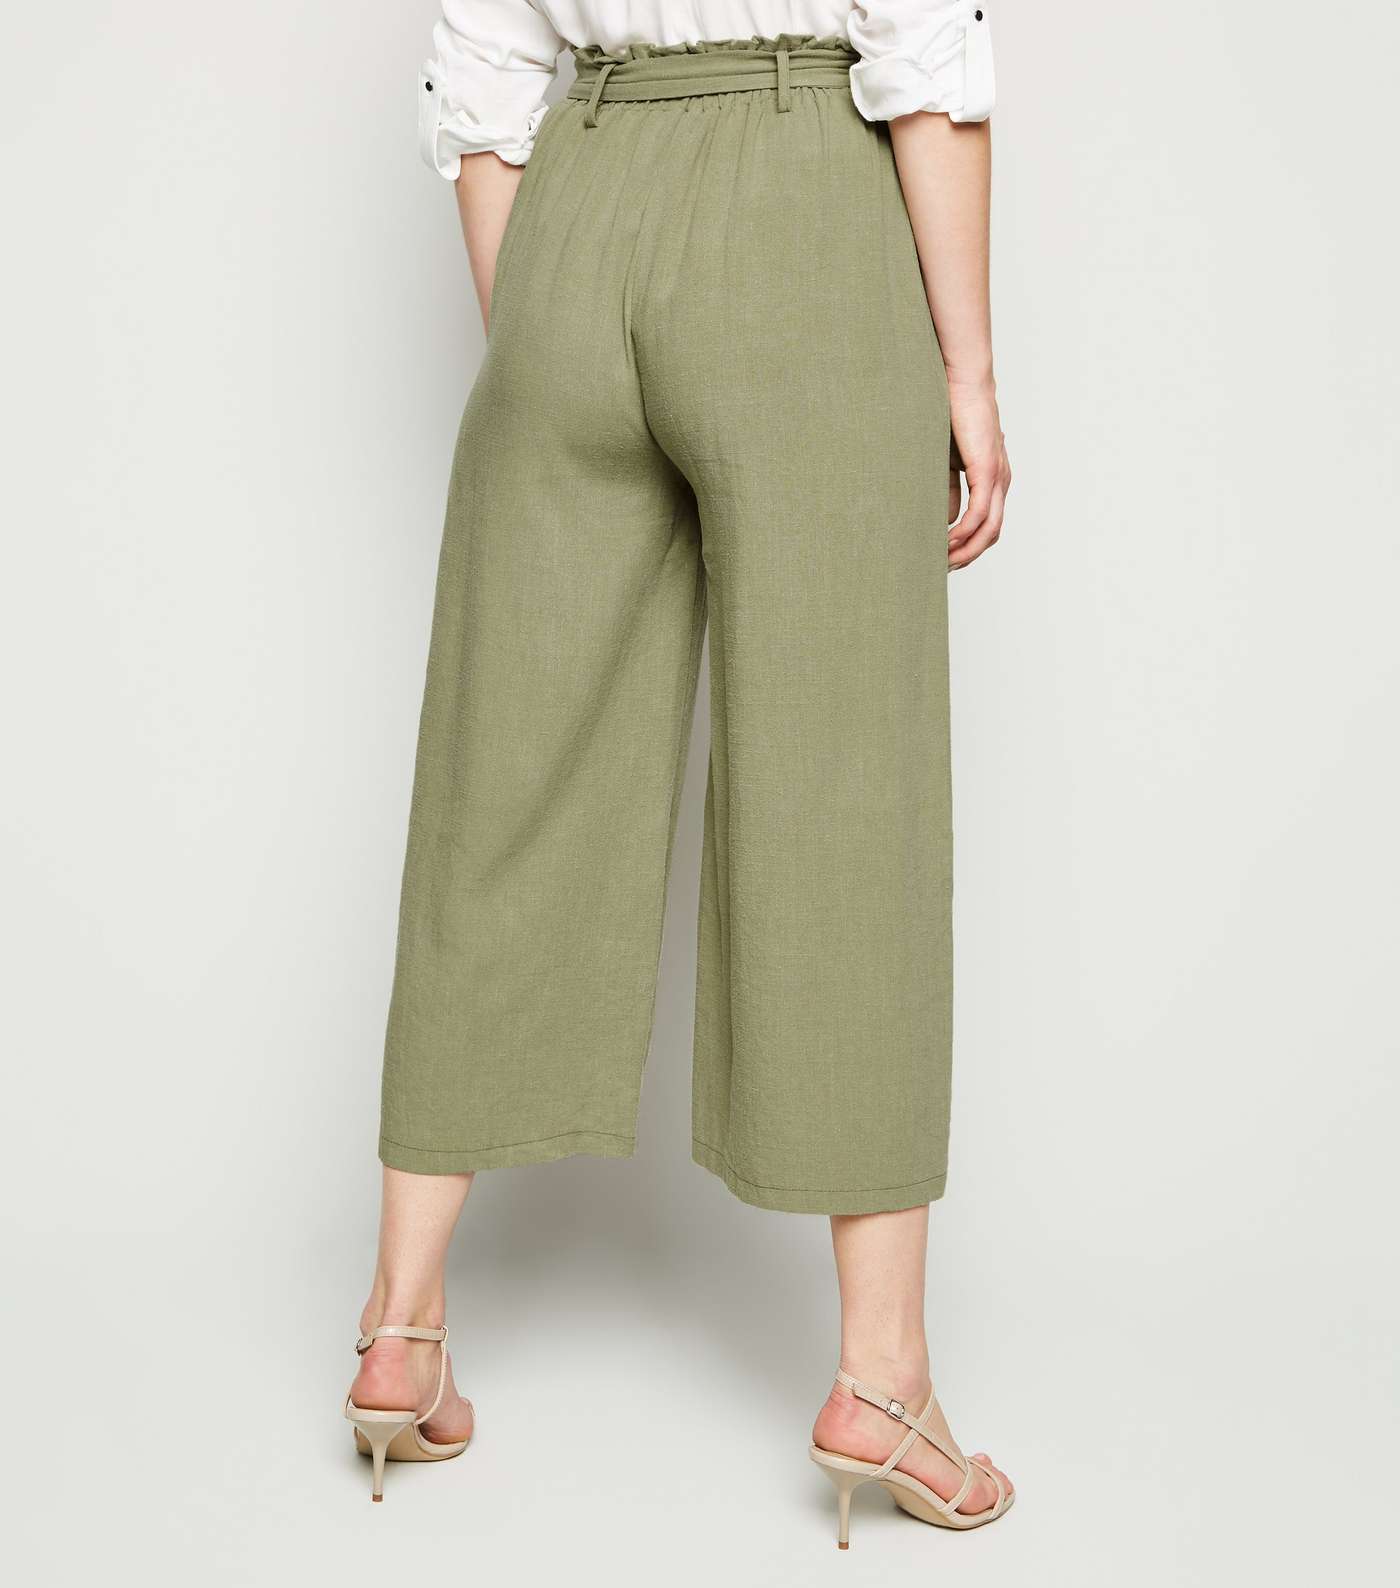 Khaki Linen Look High Waist Crop Trousers Image 5